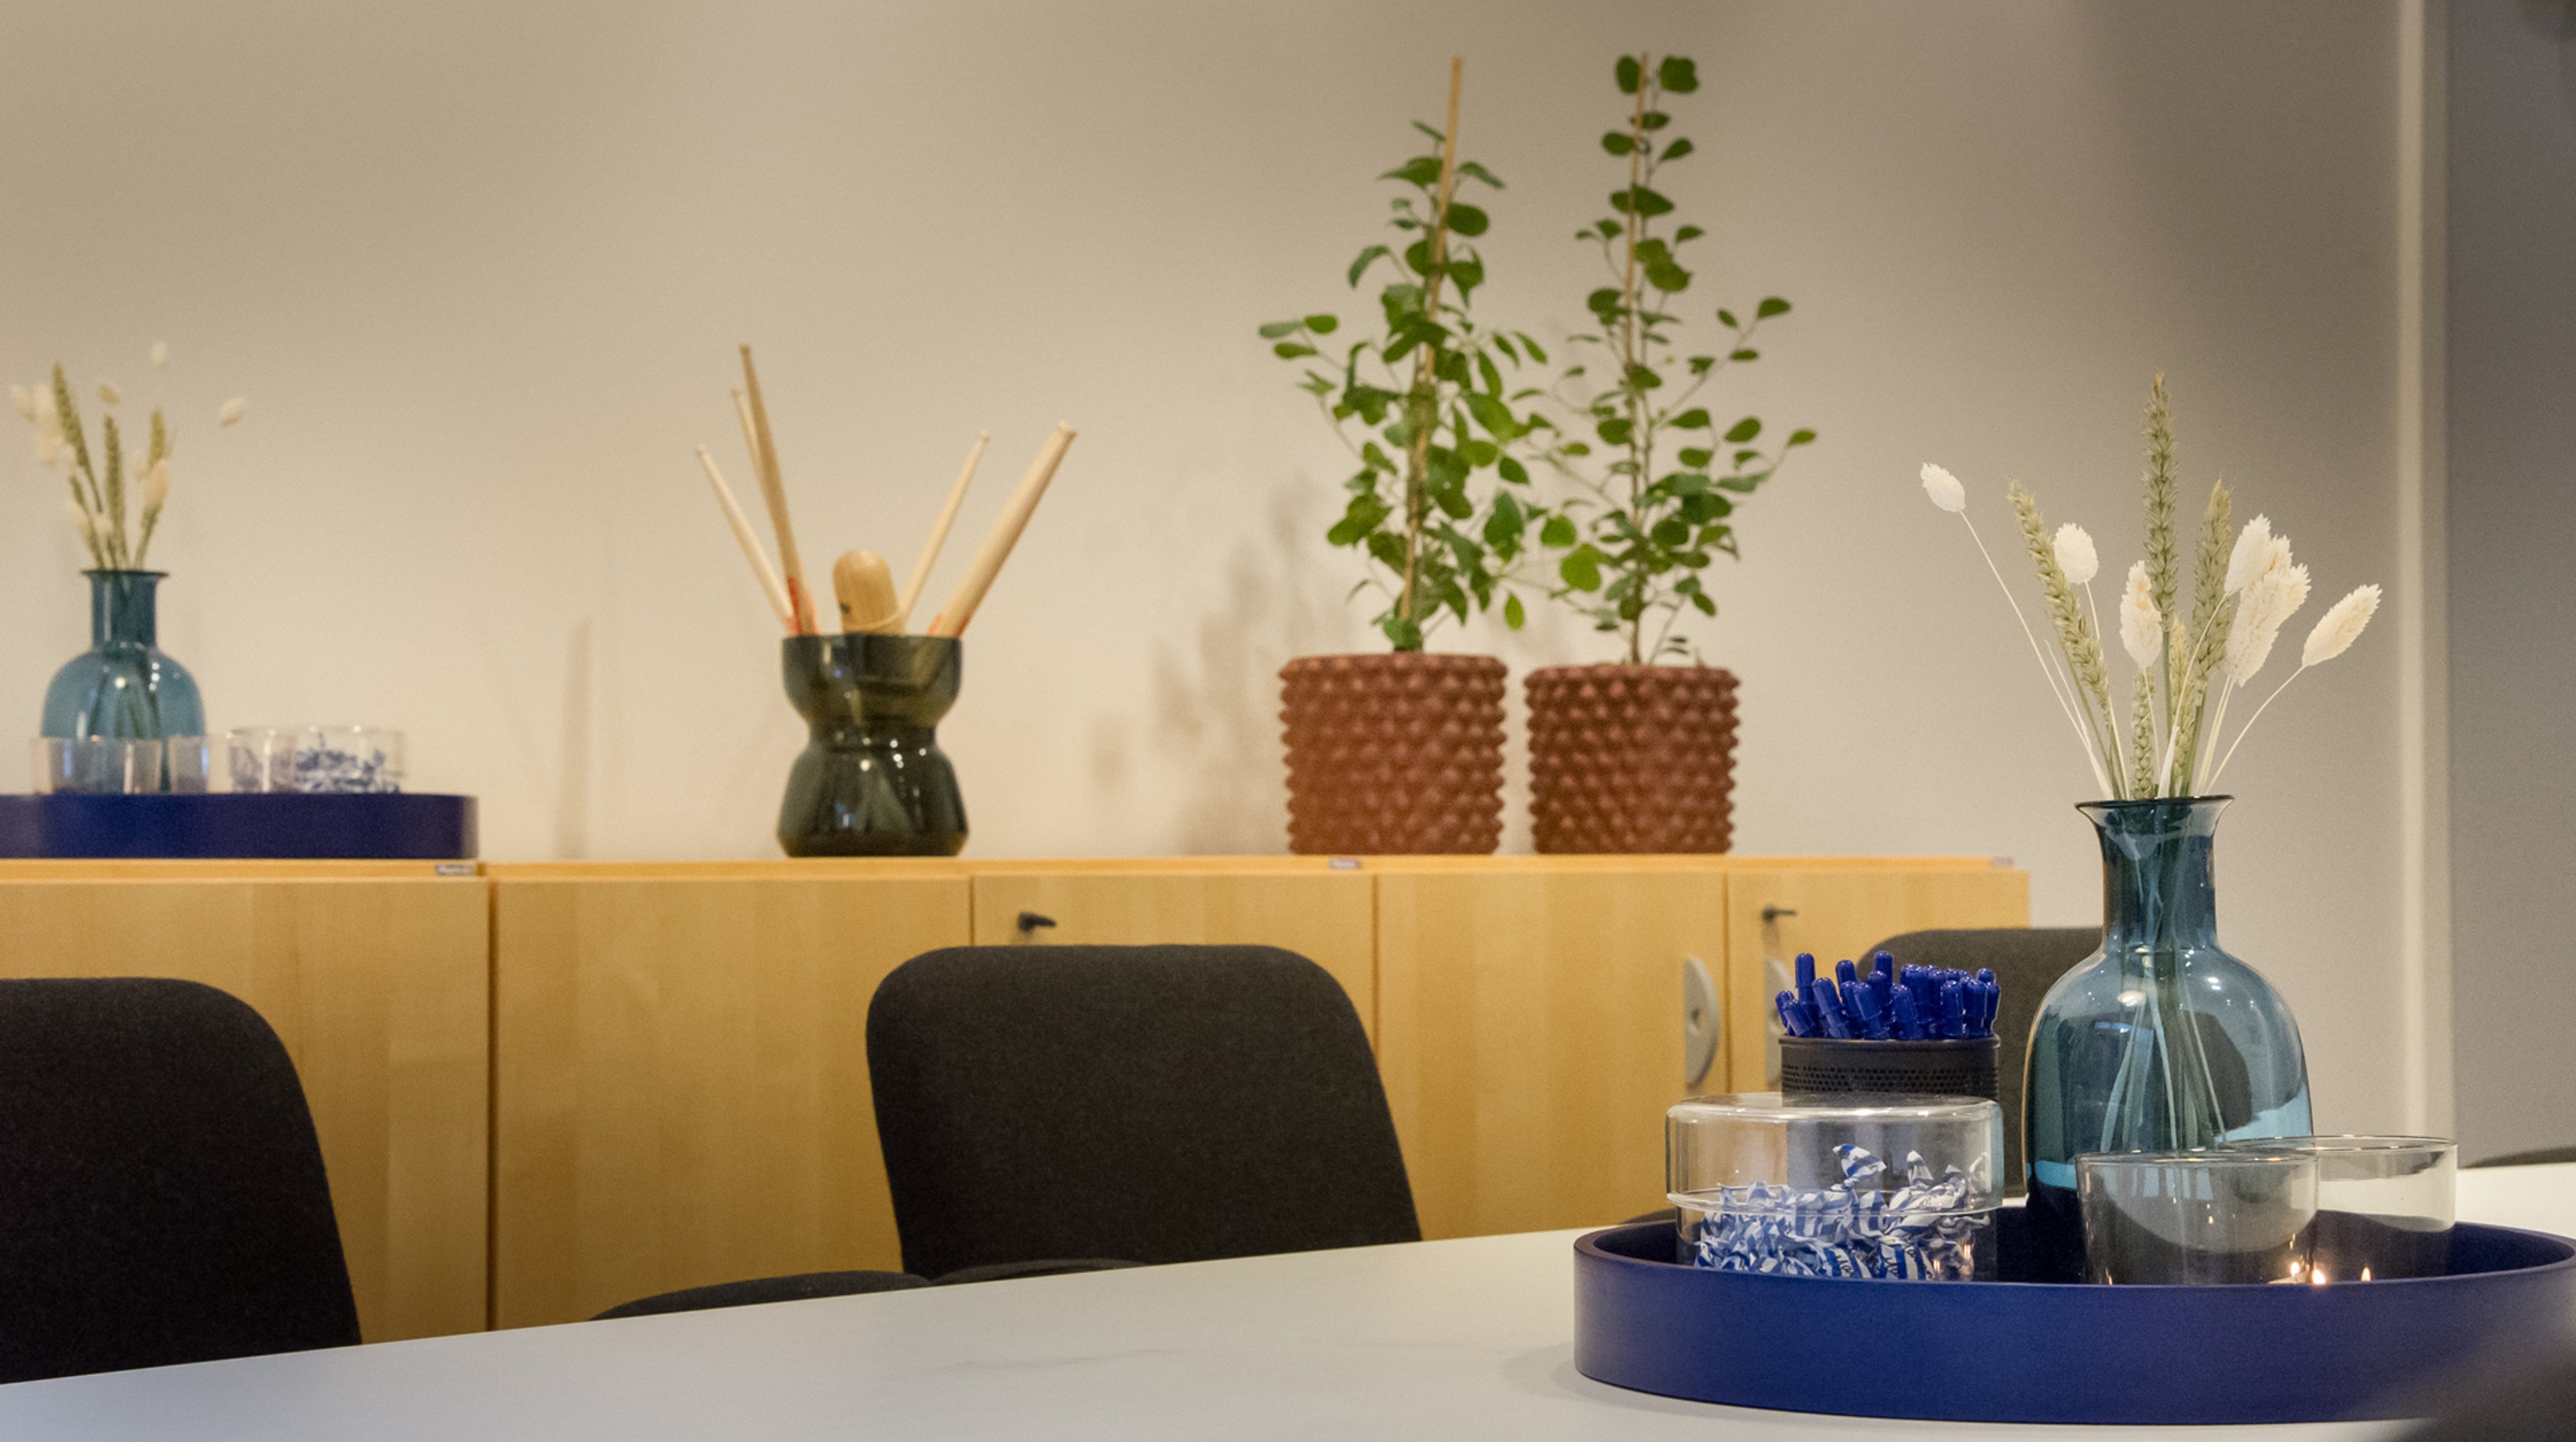 På konferensbordet står pennor, godis och en vas. På bänken bakom står blommor och en vas med trummpinnar.